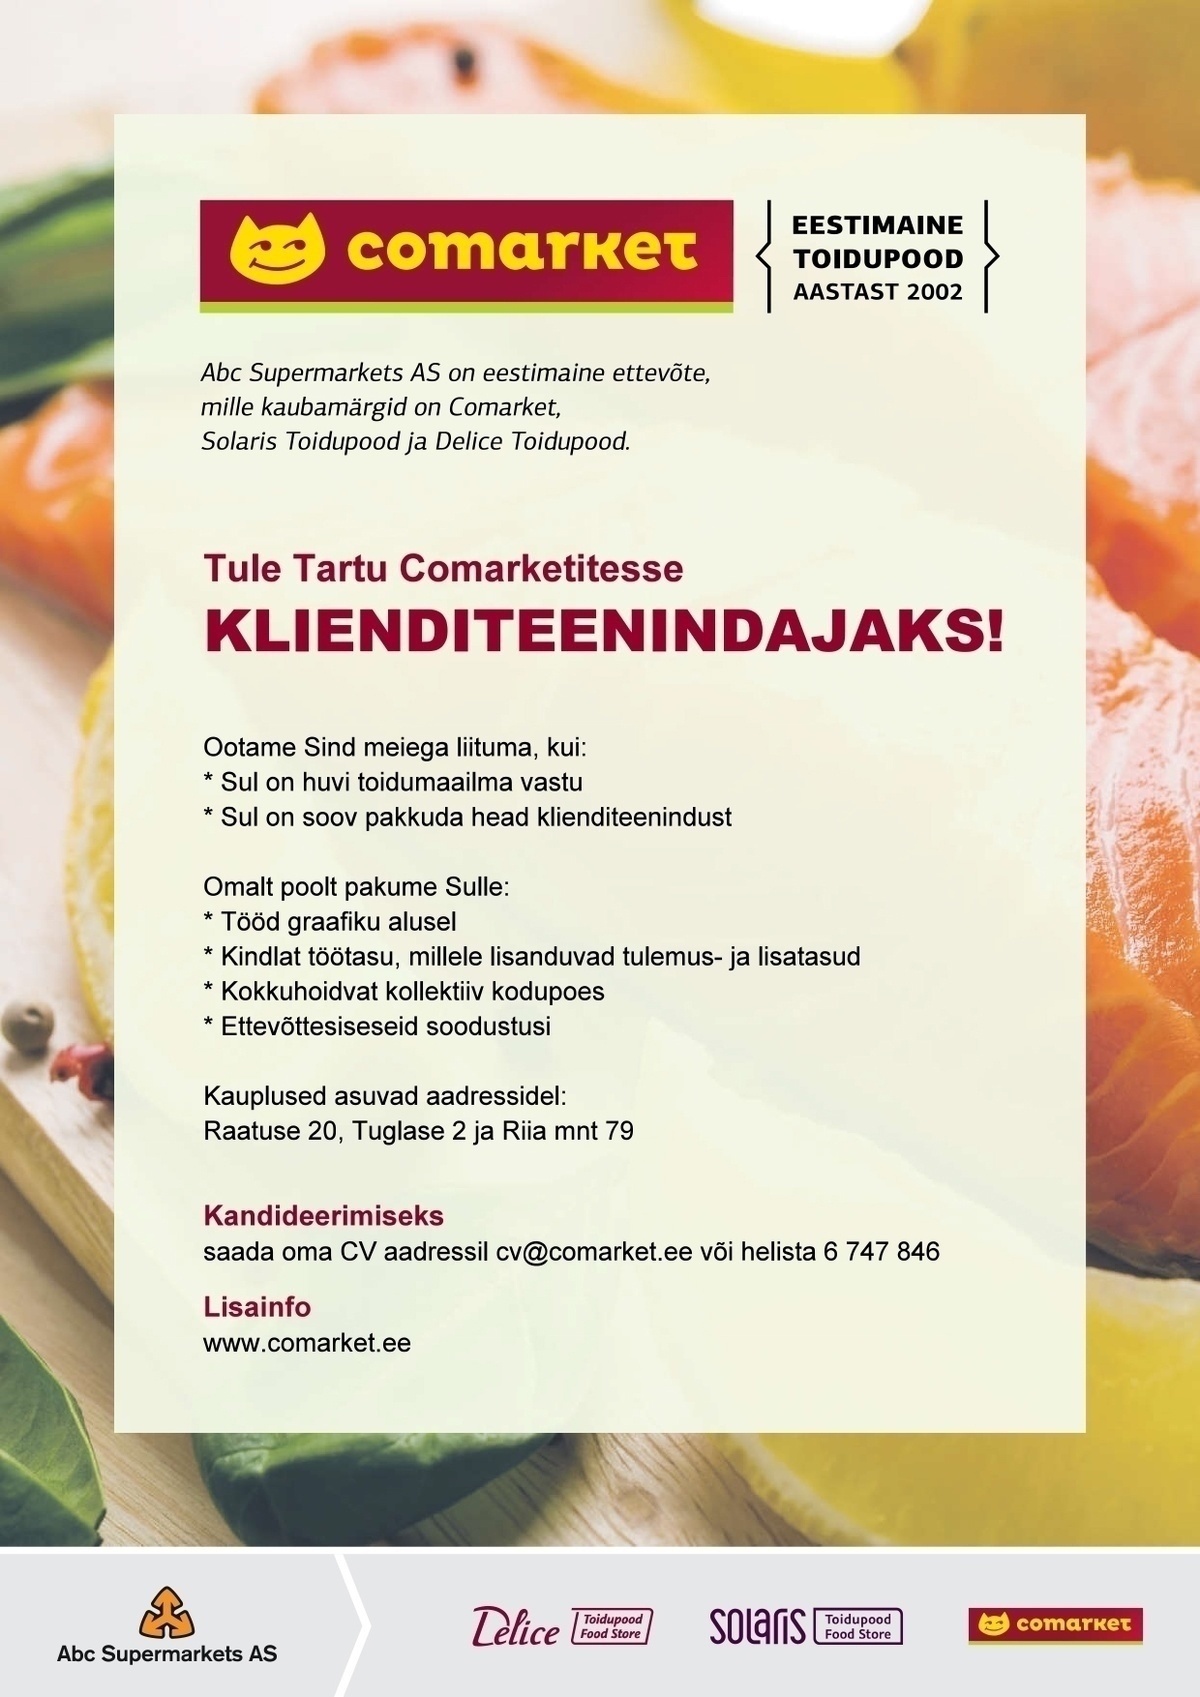 Abc Supermarkets AS KLIENDITEENINDAJA Tartu Comarketitesse